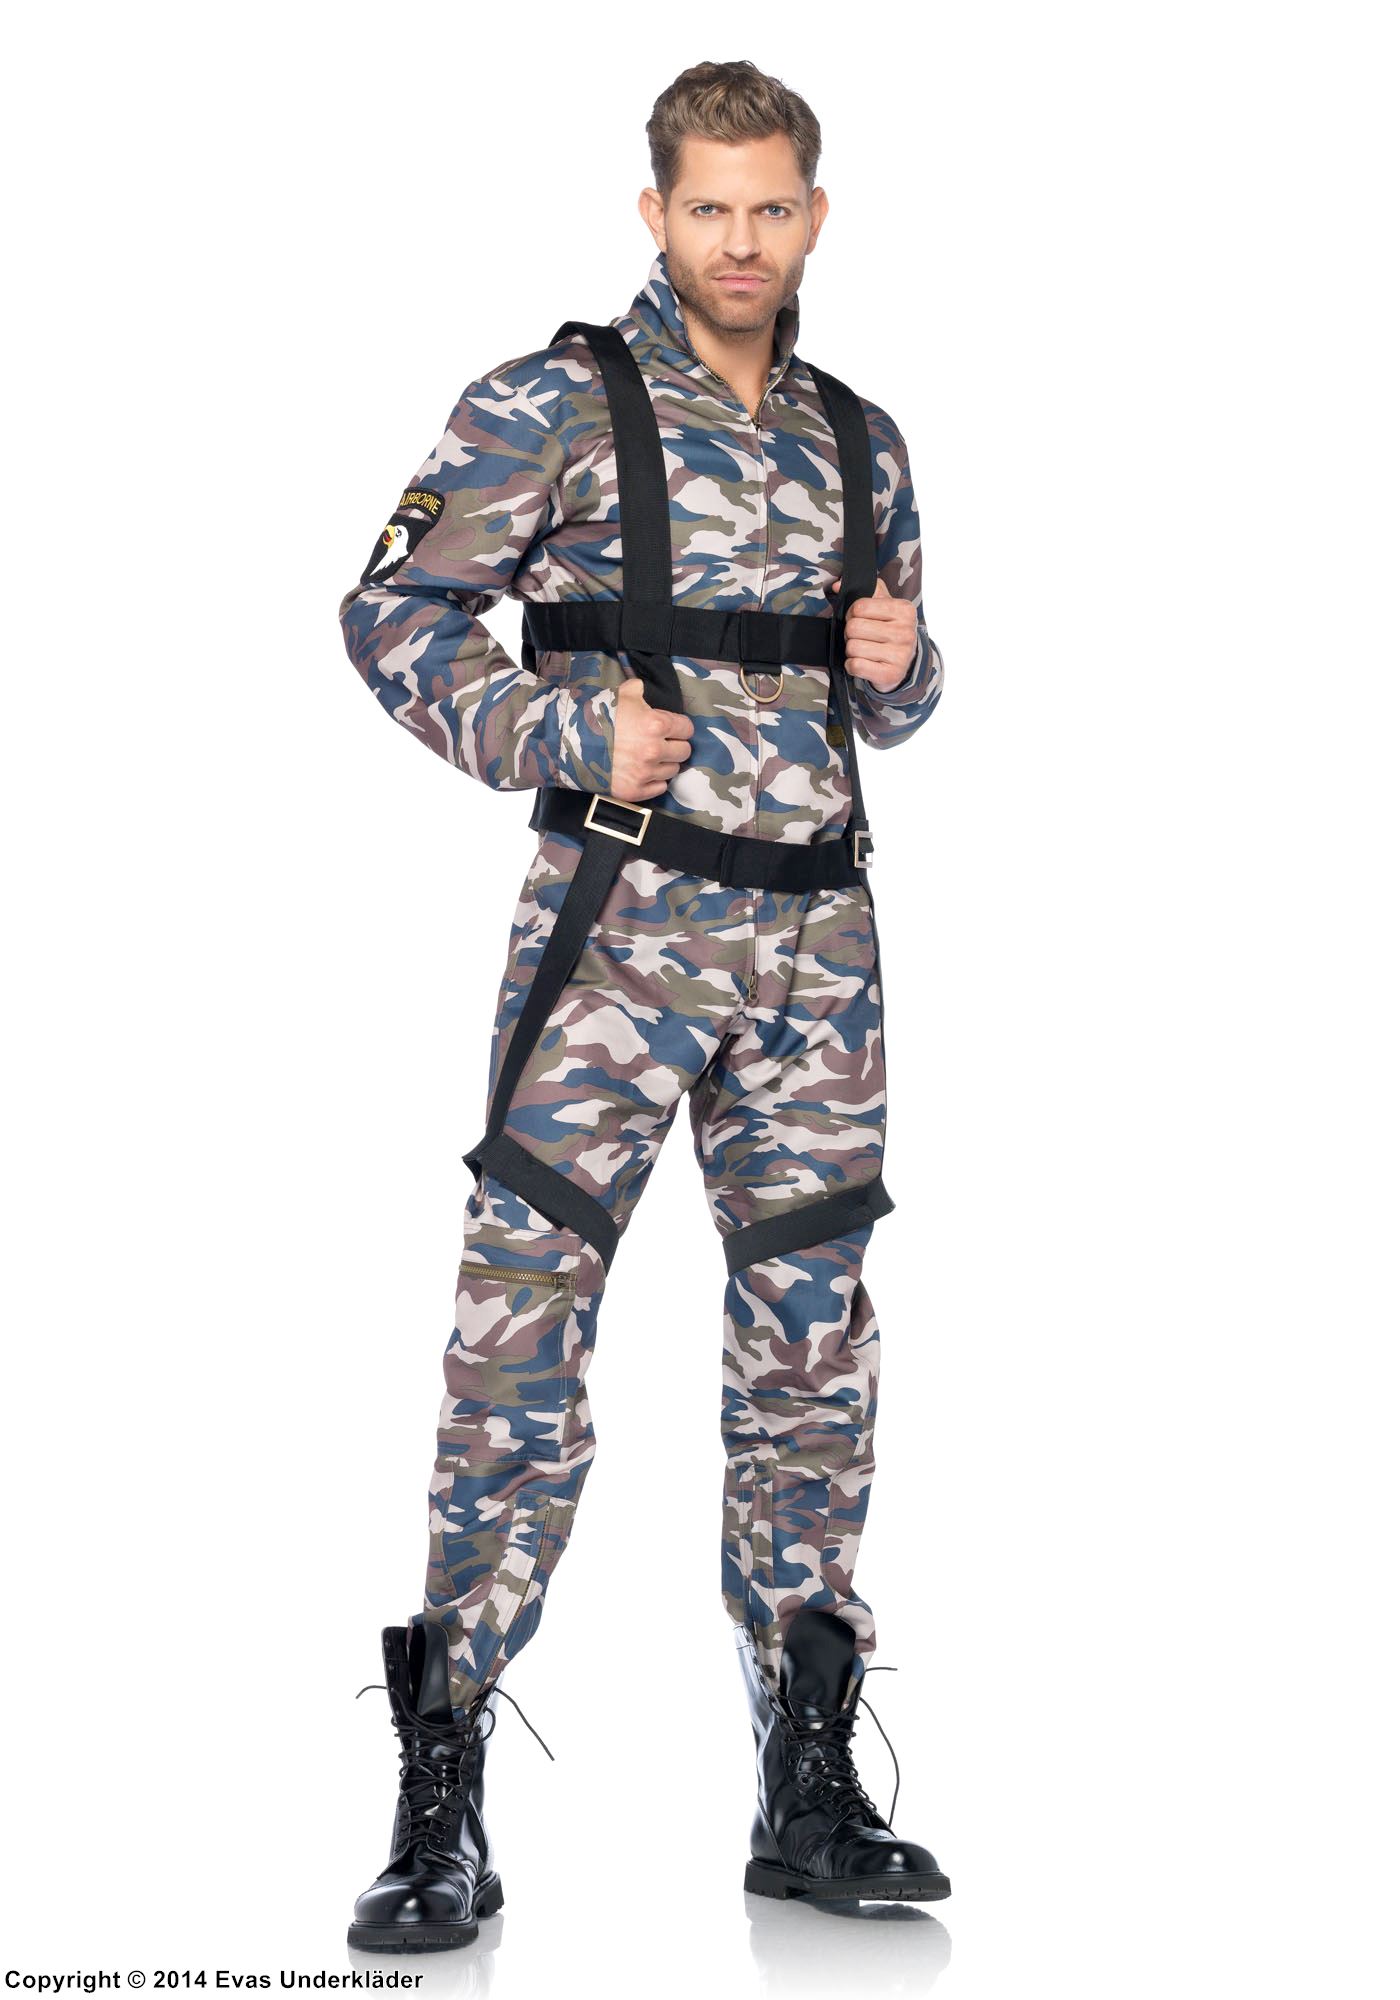 Fallskärmsjägare, jumpsuit-dräkt med dragkedja på framsidan och långa ärmar, kamouflagemönstrad